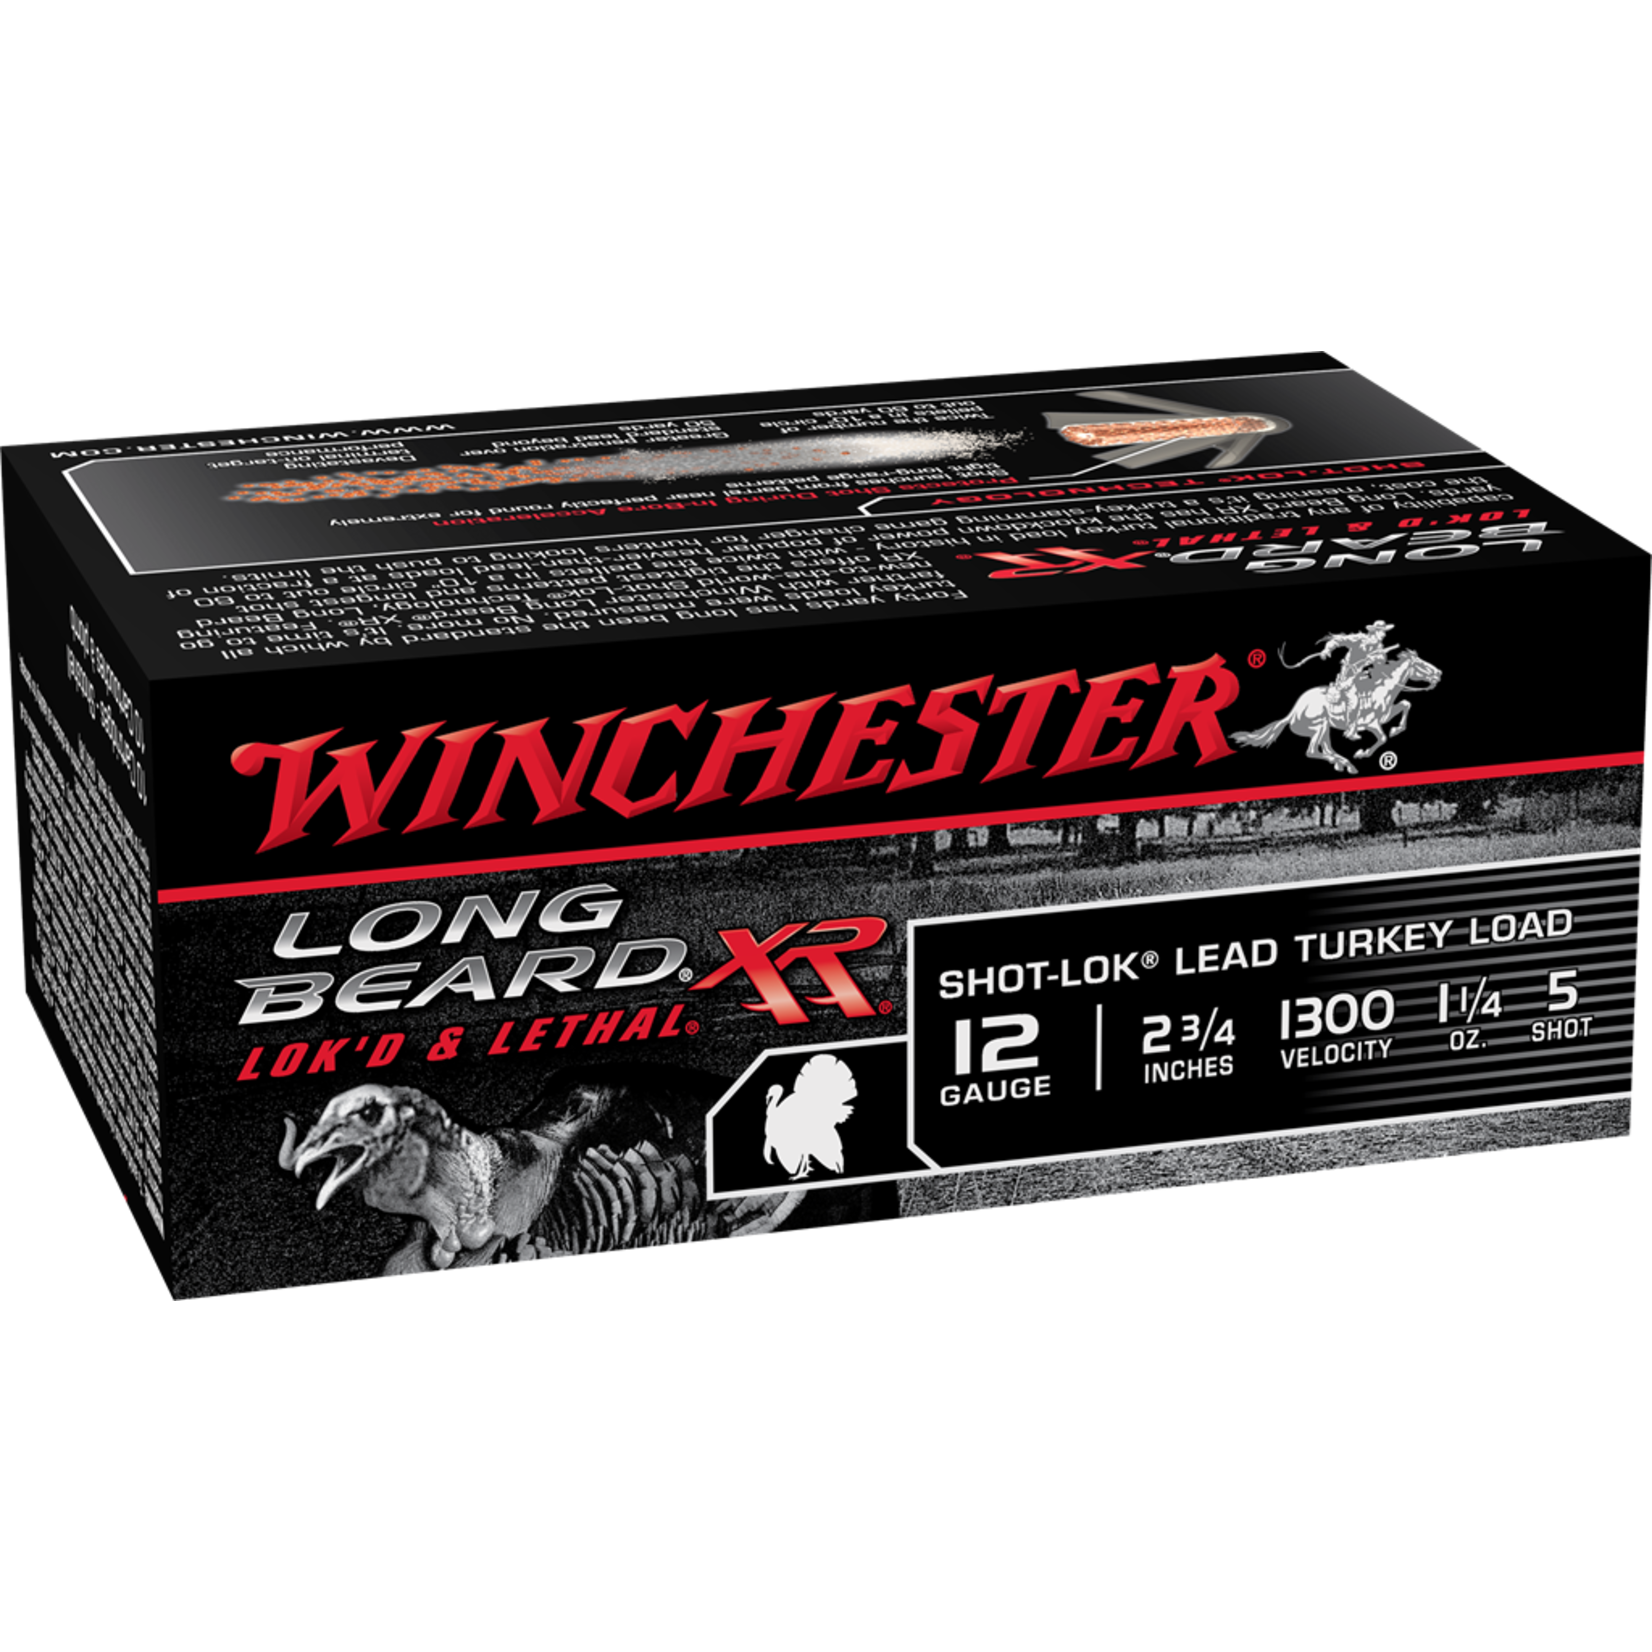 WINCHESTER Munitions Winchester Longbeard XR Cal.12 2 3/4" #5 1-1/4 Oz